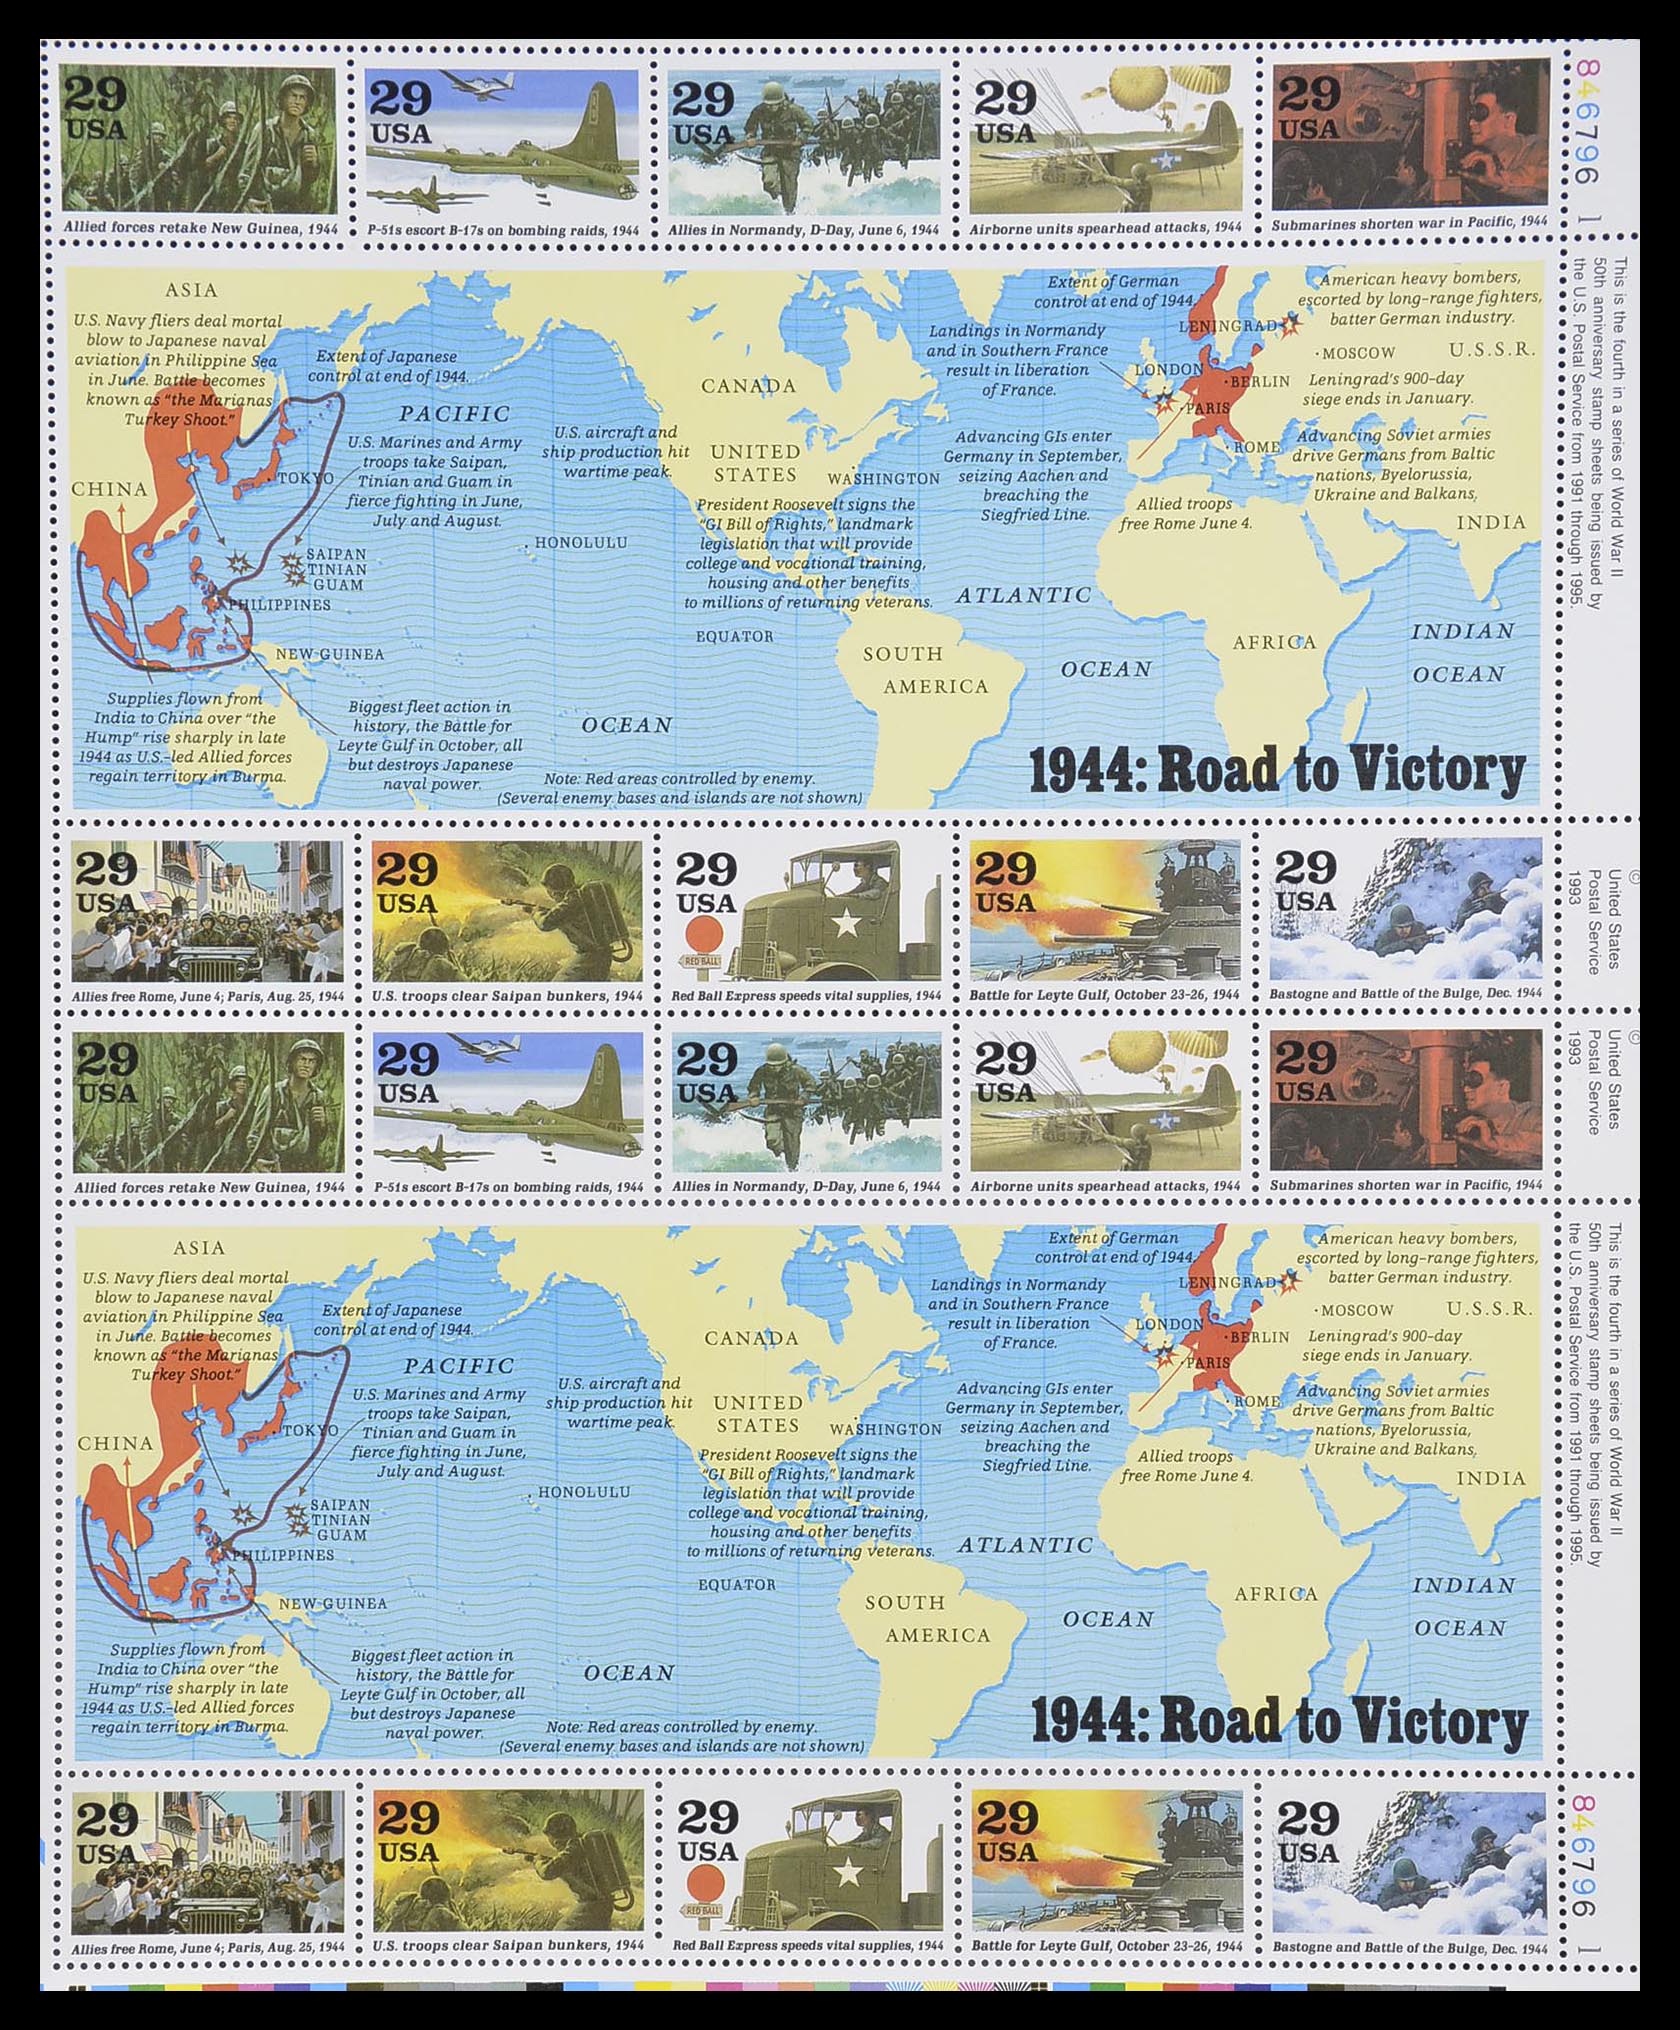 33933 102 - Stamp collection 33933 USA MNH 1945-1996.